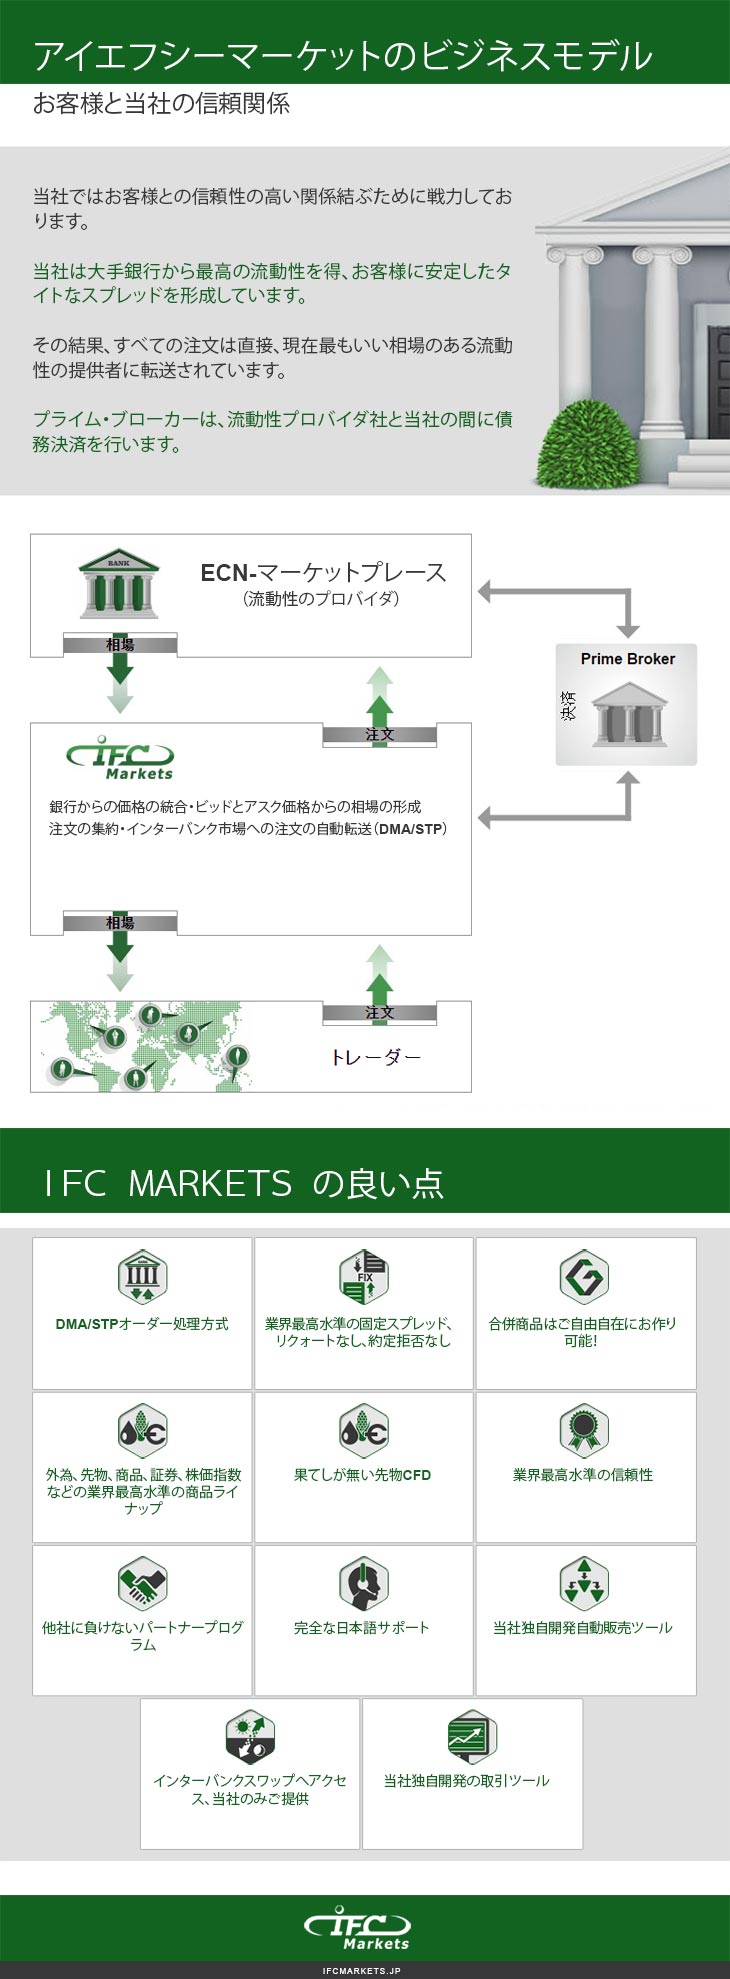 外国為替・CFD取引会社のビジネスモデル